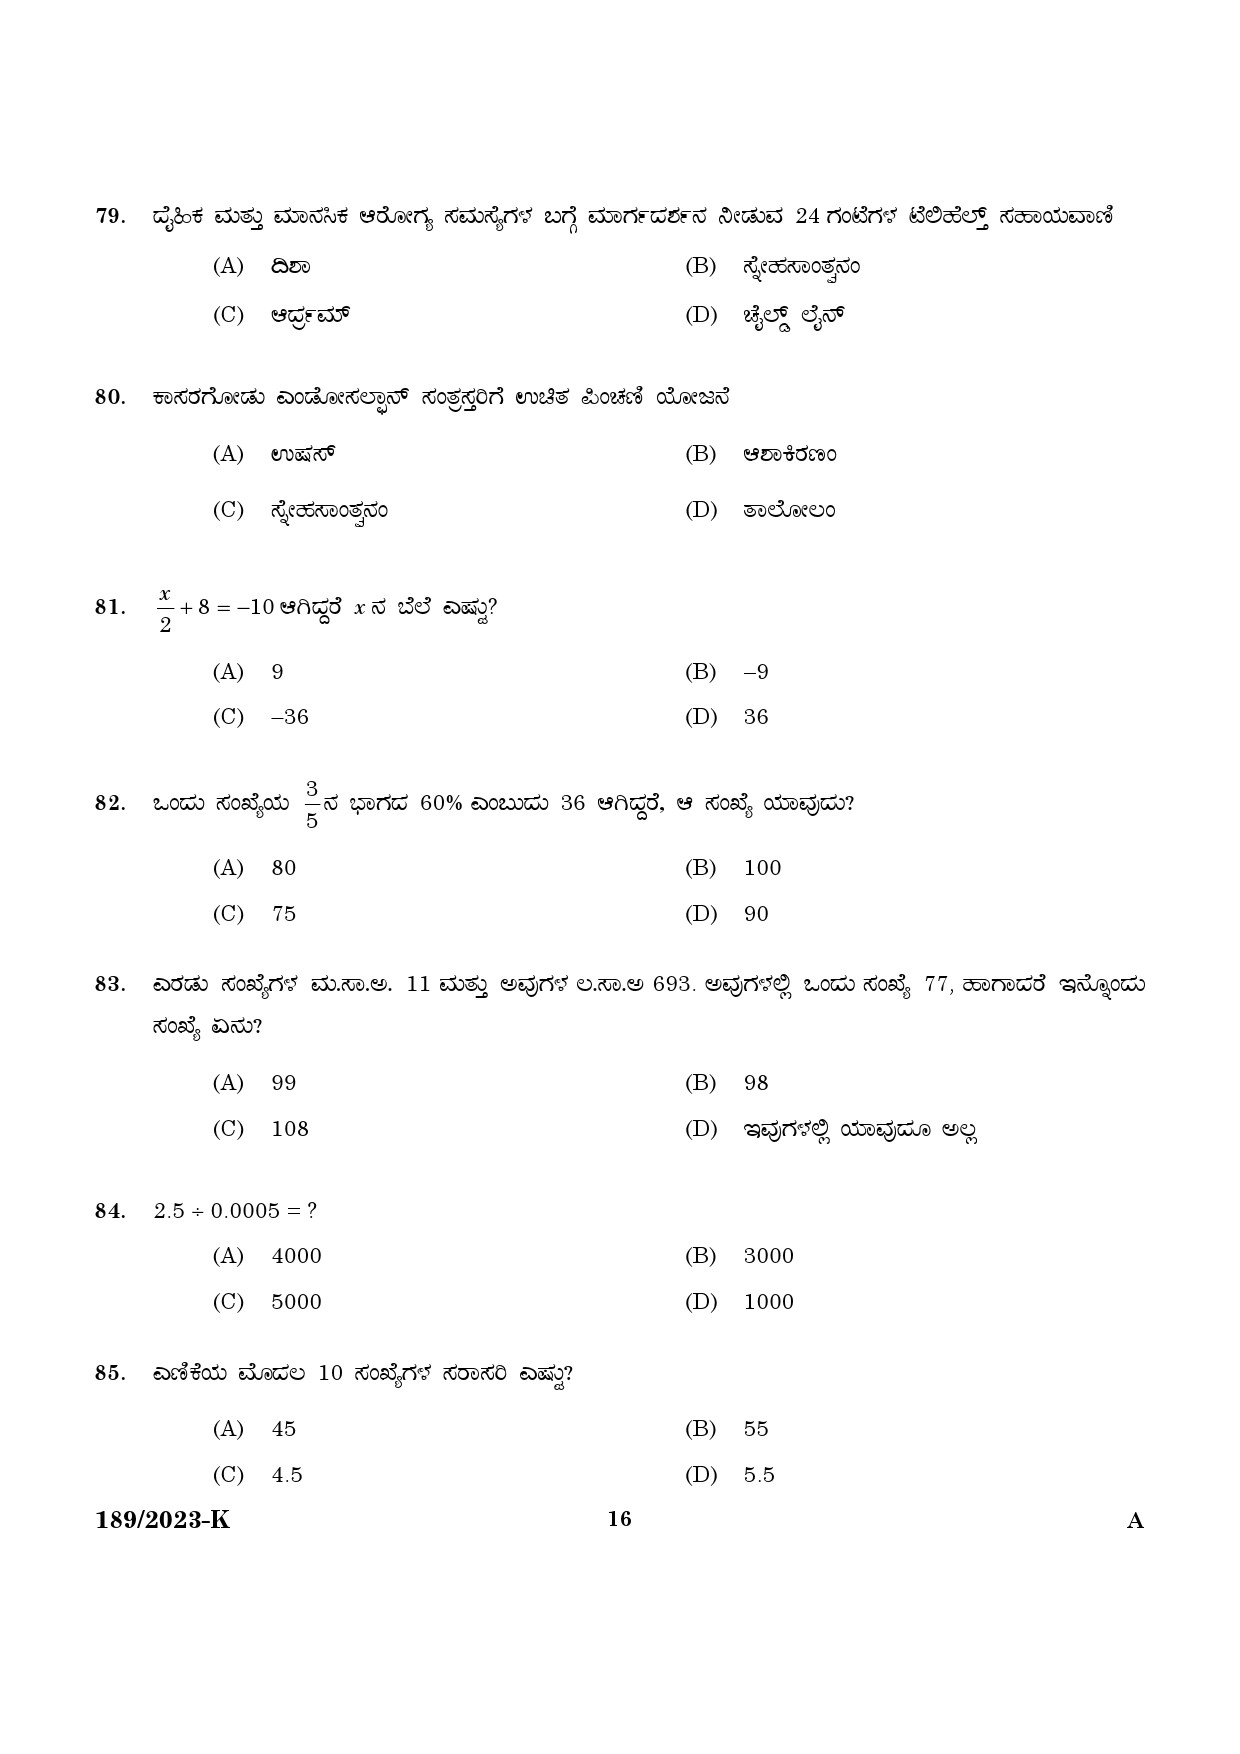 KPSC LGS Kannada Exam 2023 Code 1892023 K 14